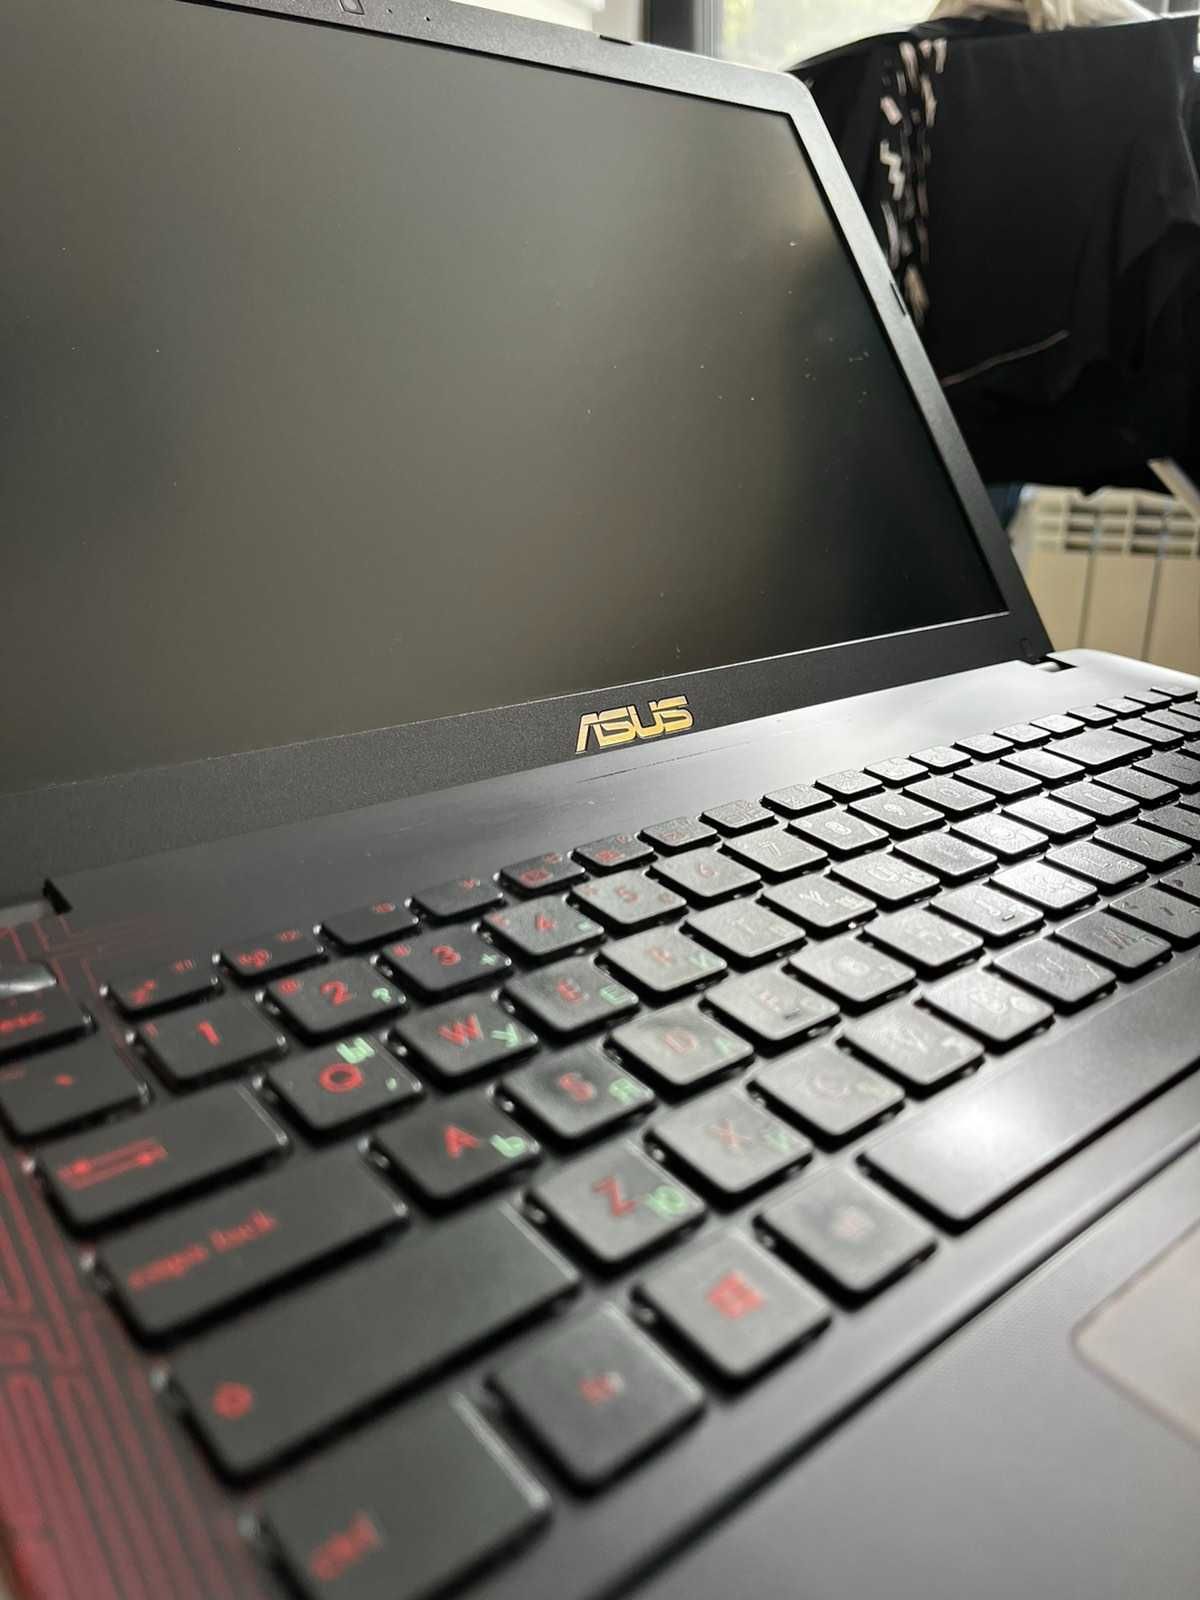 Геймърски лаптоп - ASUS K550JX-DM274D